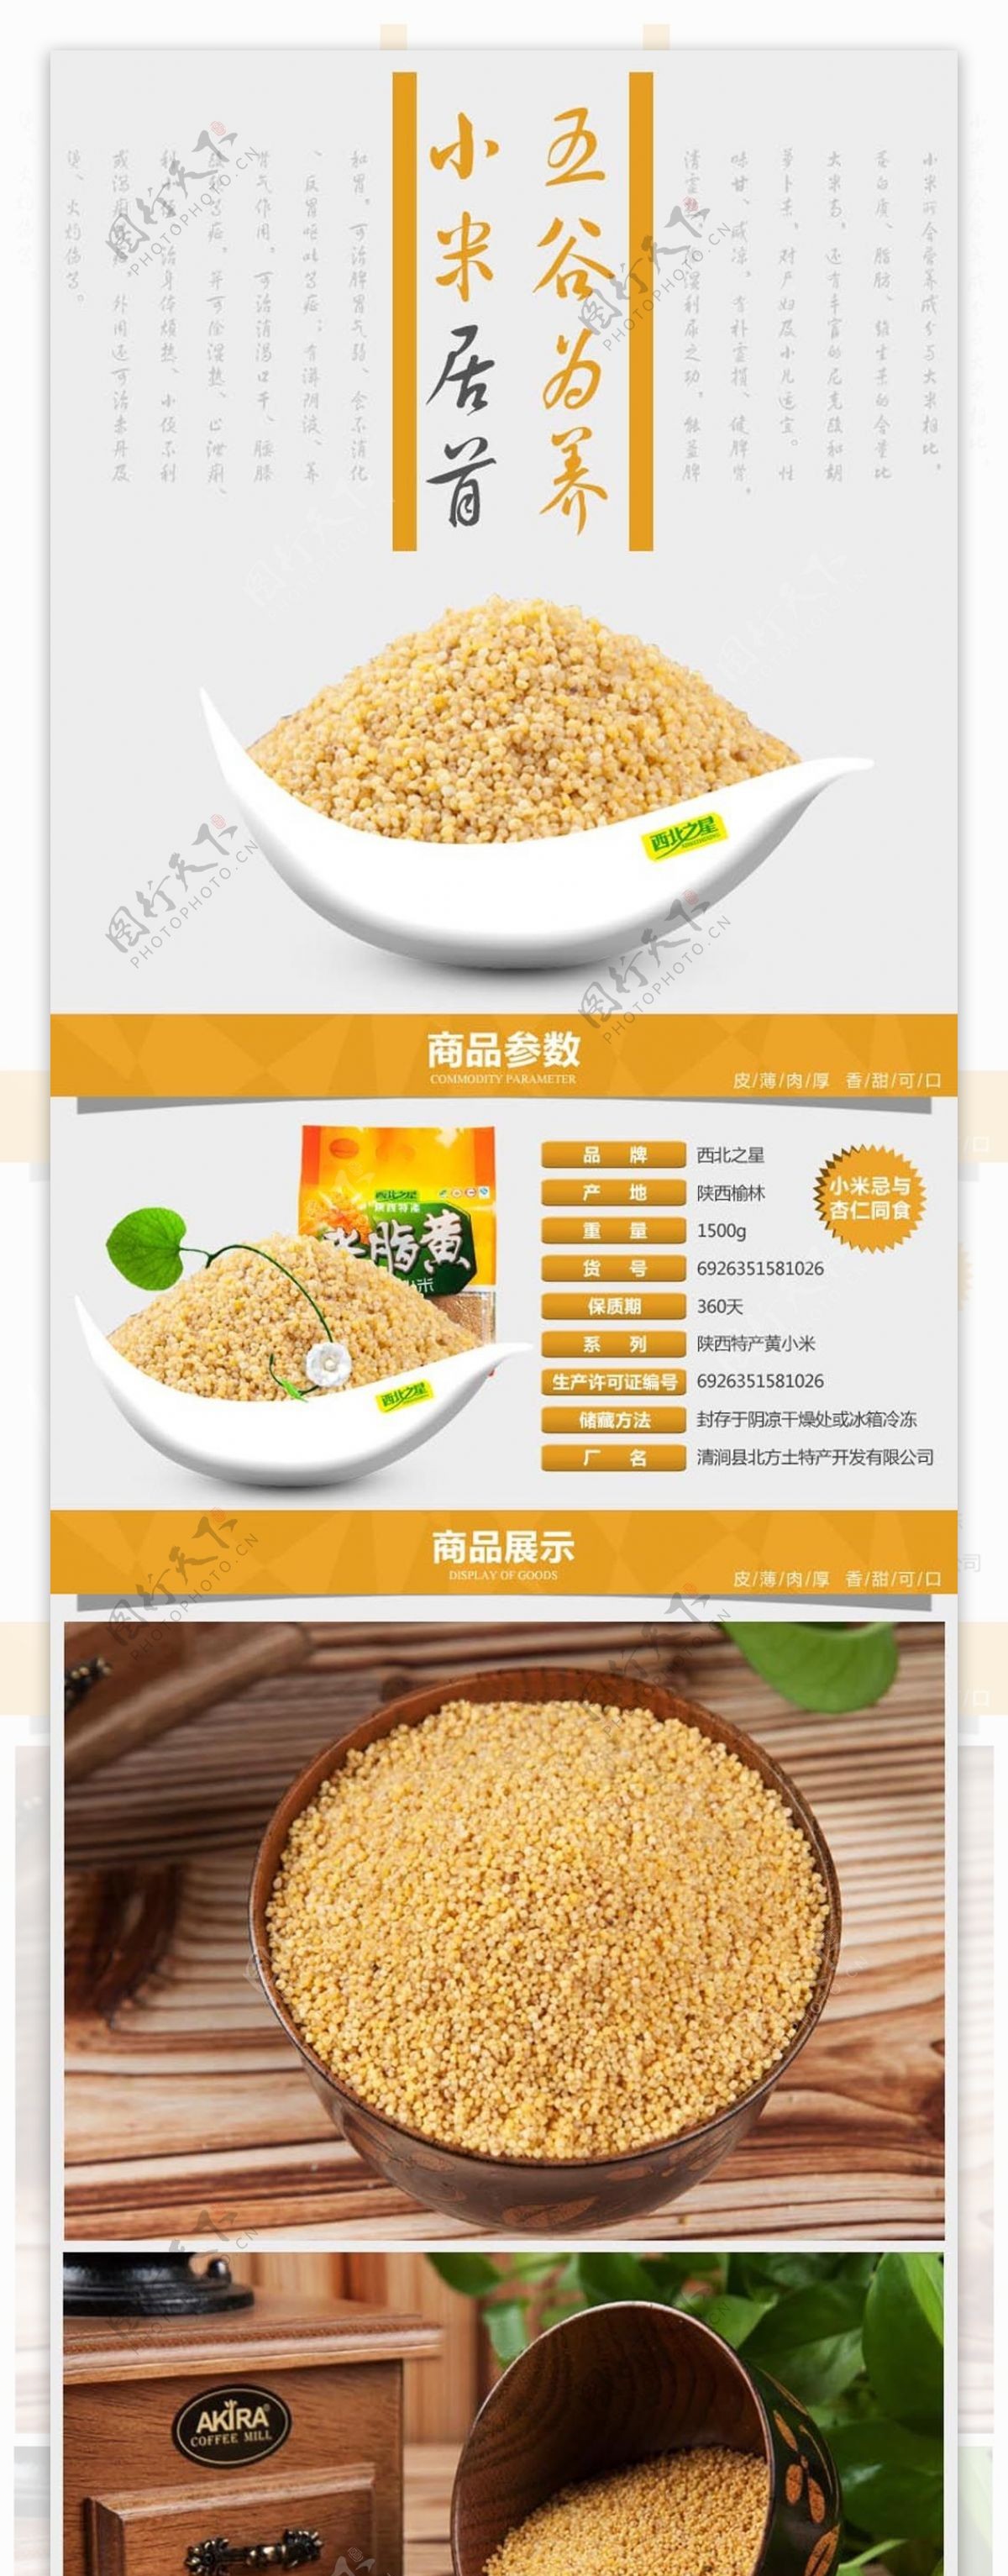 五谷杂粮黄小米详情页图片